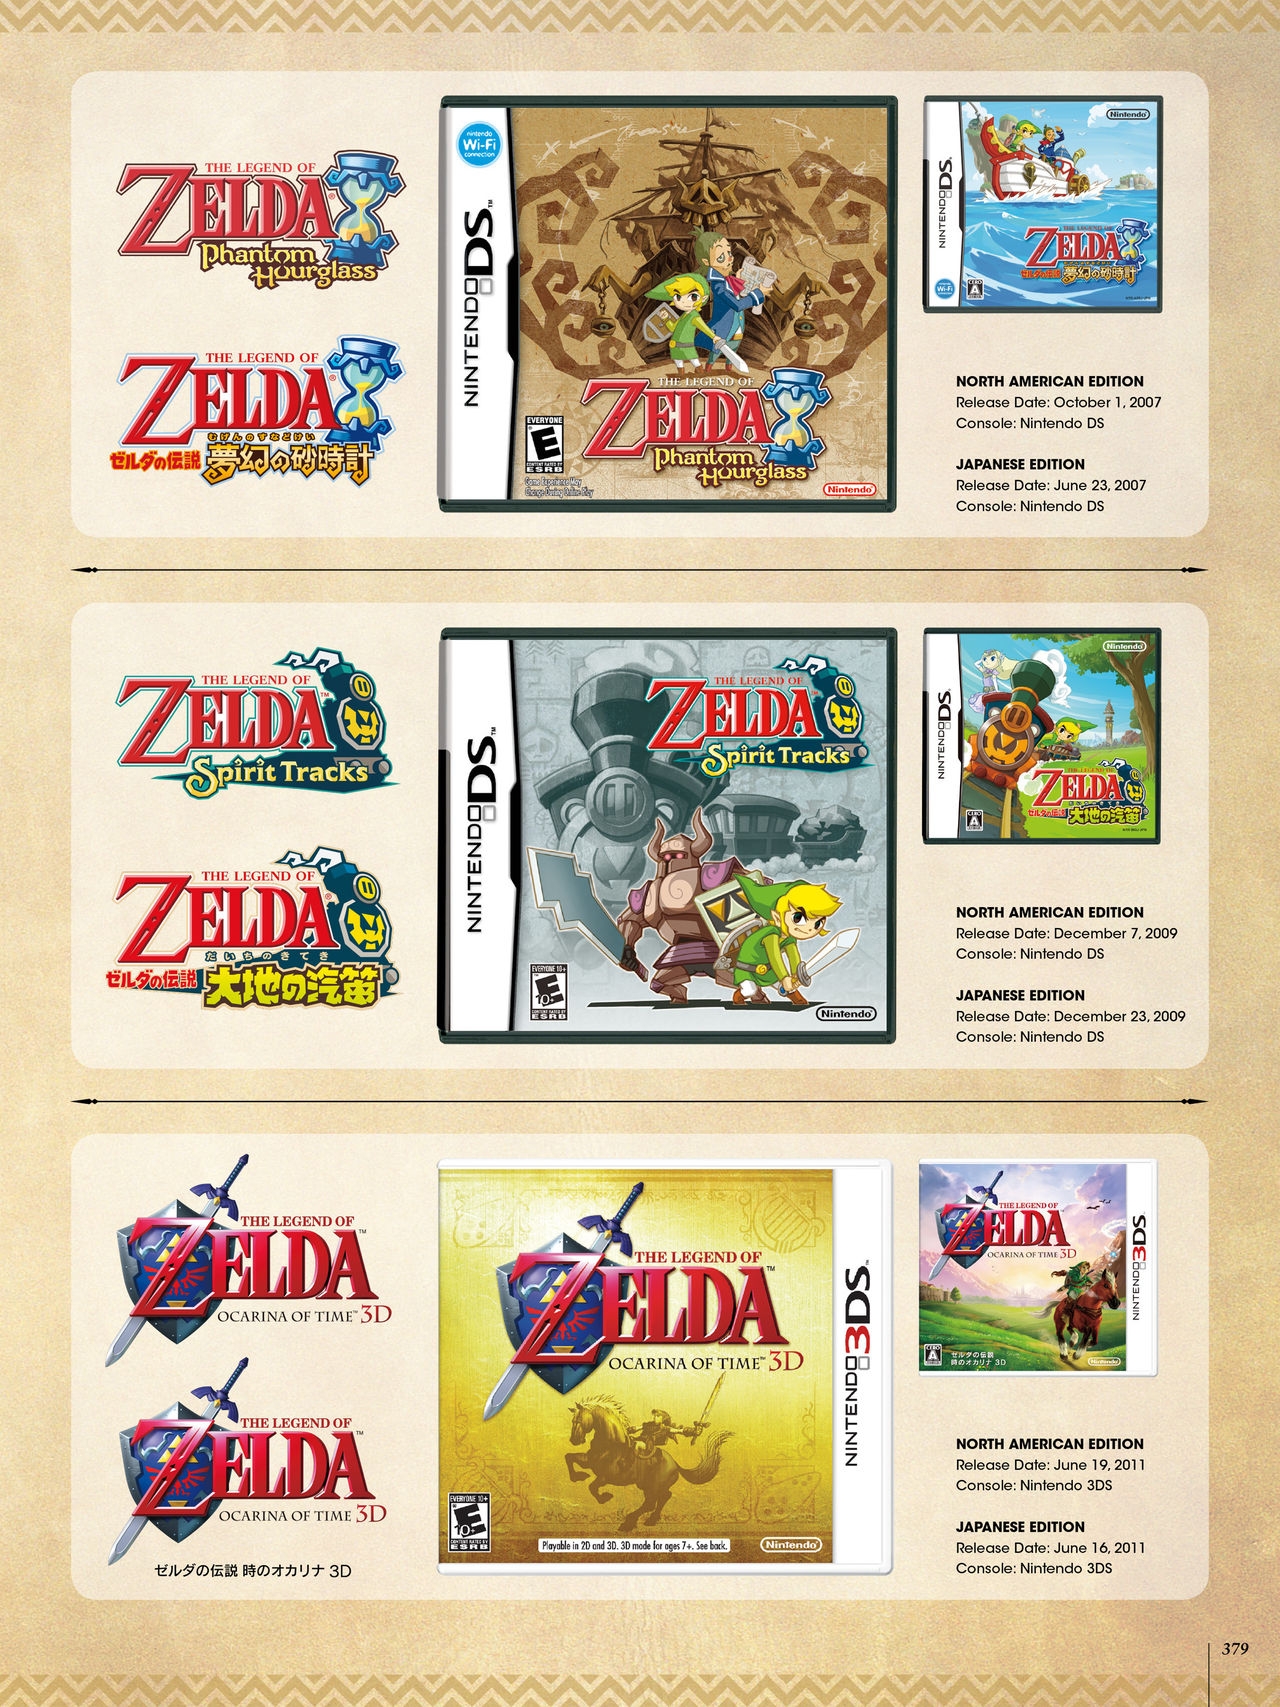 The Legend of Zelda - Art & Artifacts 252